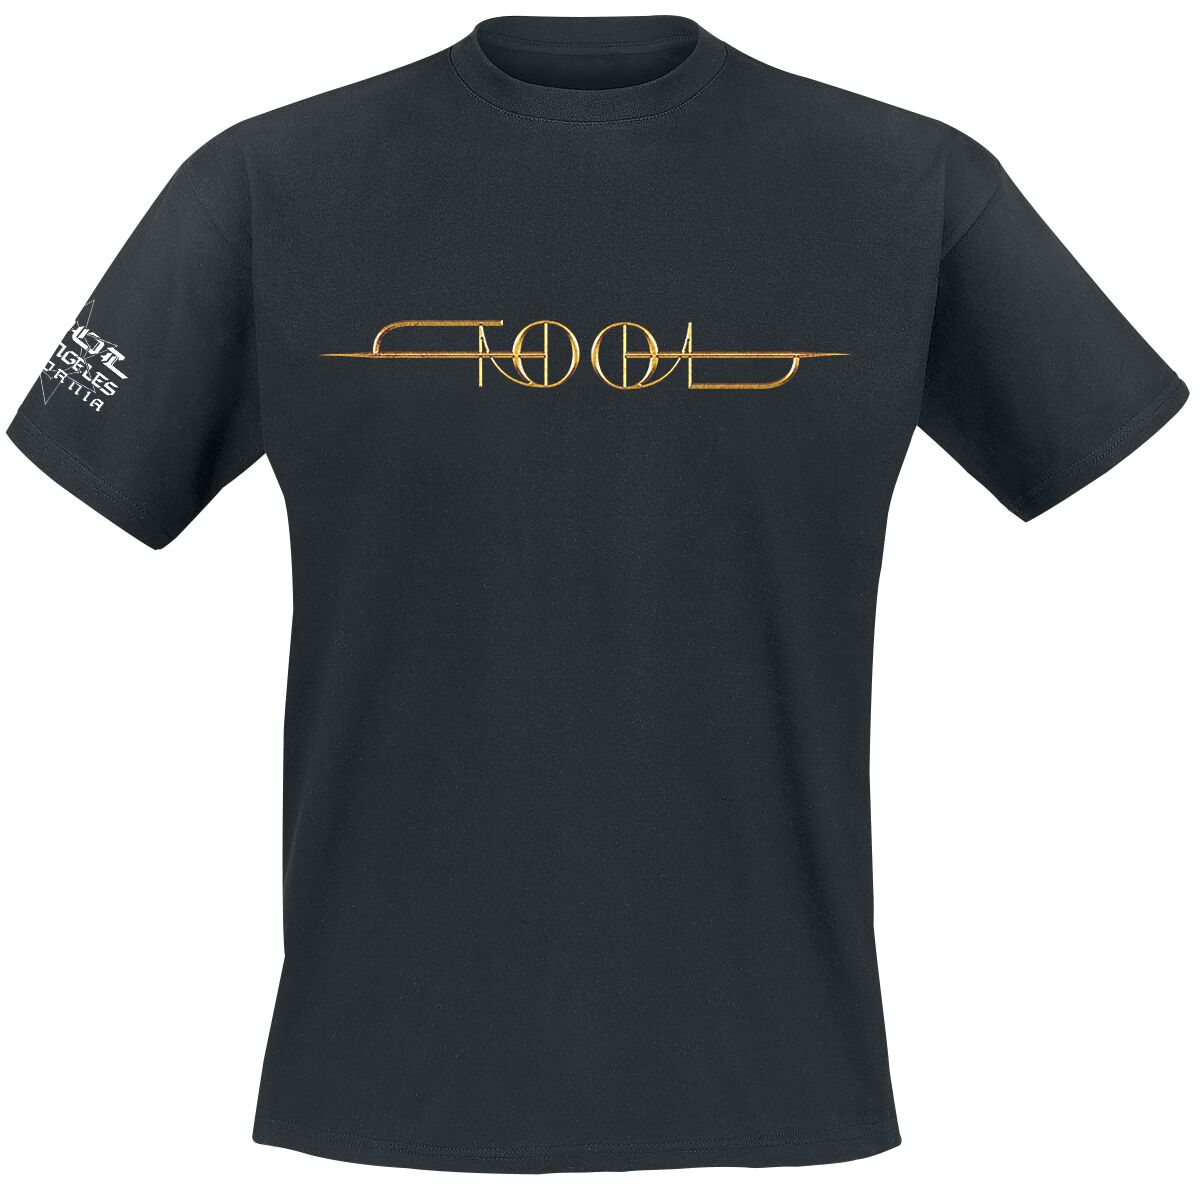 Tool T-Shirt - Gold ISO - M bis XXL - für Männer - Größe L - schwarz  - Lizenziertes Merchandise!